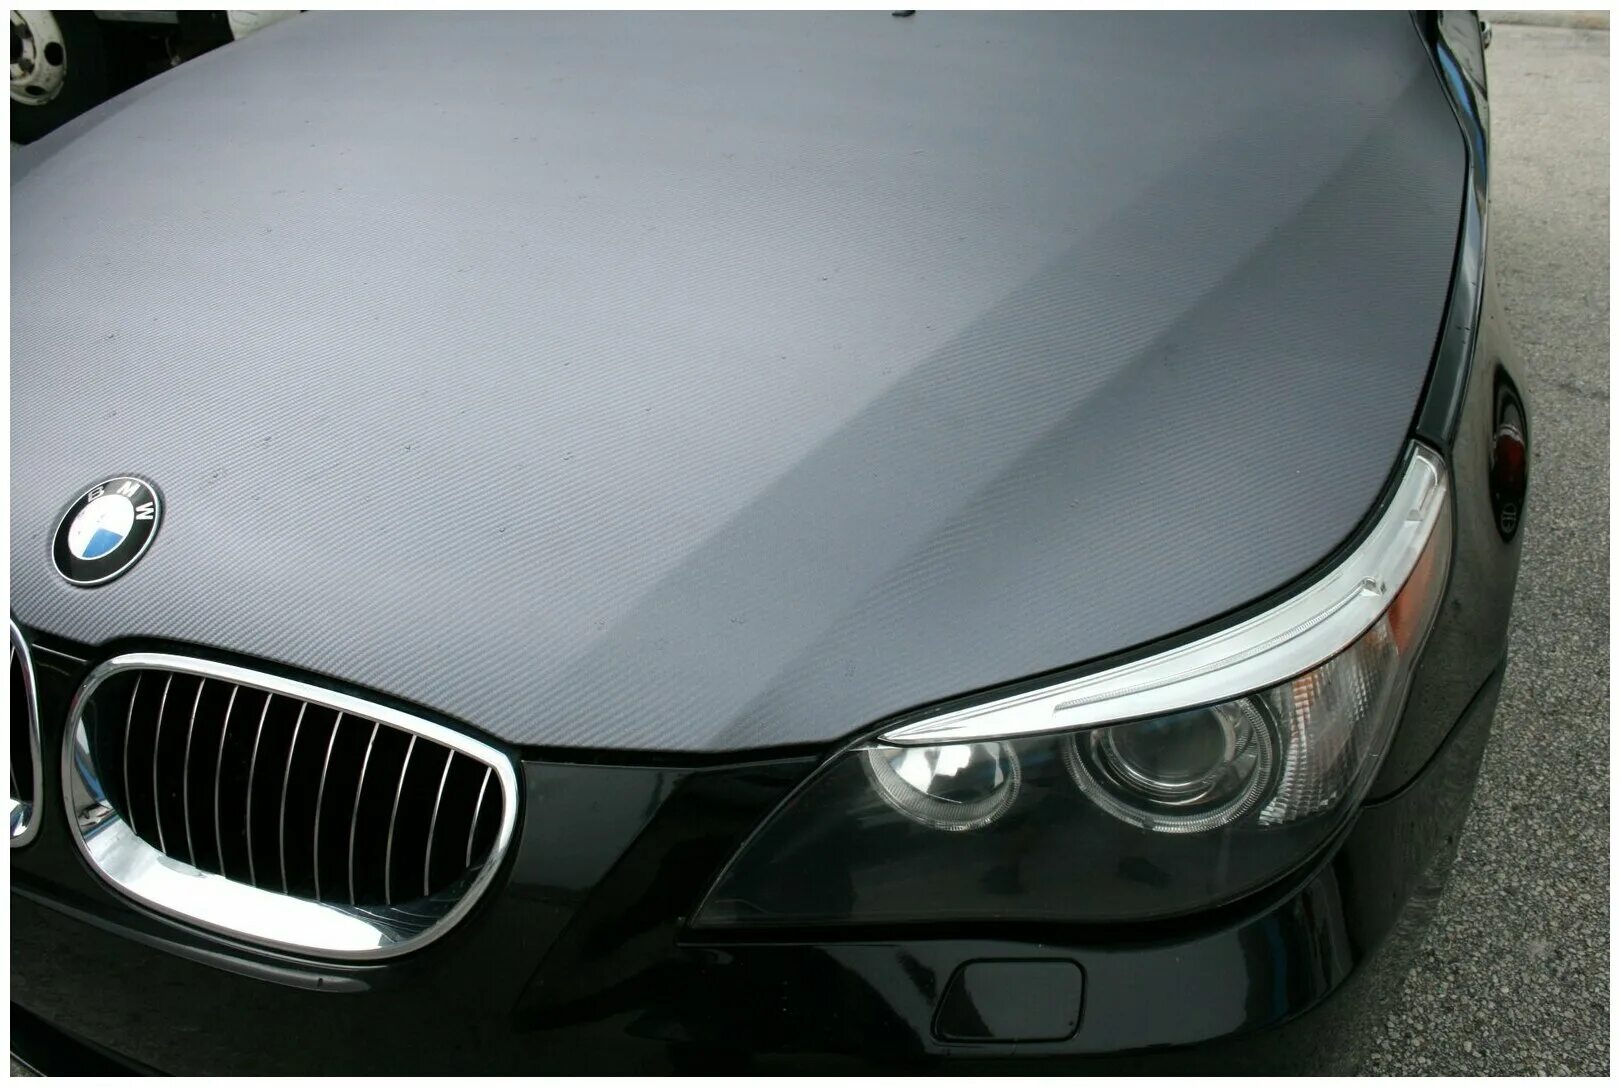 Капот в черный цвет. Файбер для уборки auto s17, серый. БМВ карбон. BMW x6 Carbon капот. BMW пленка карбон.